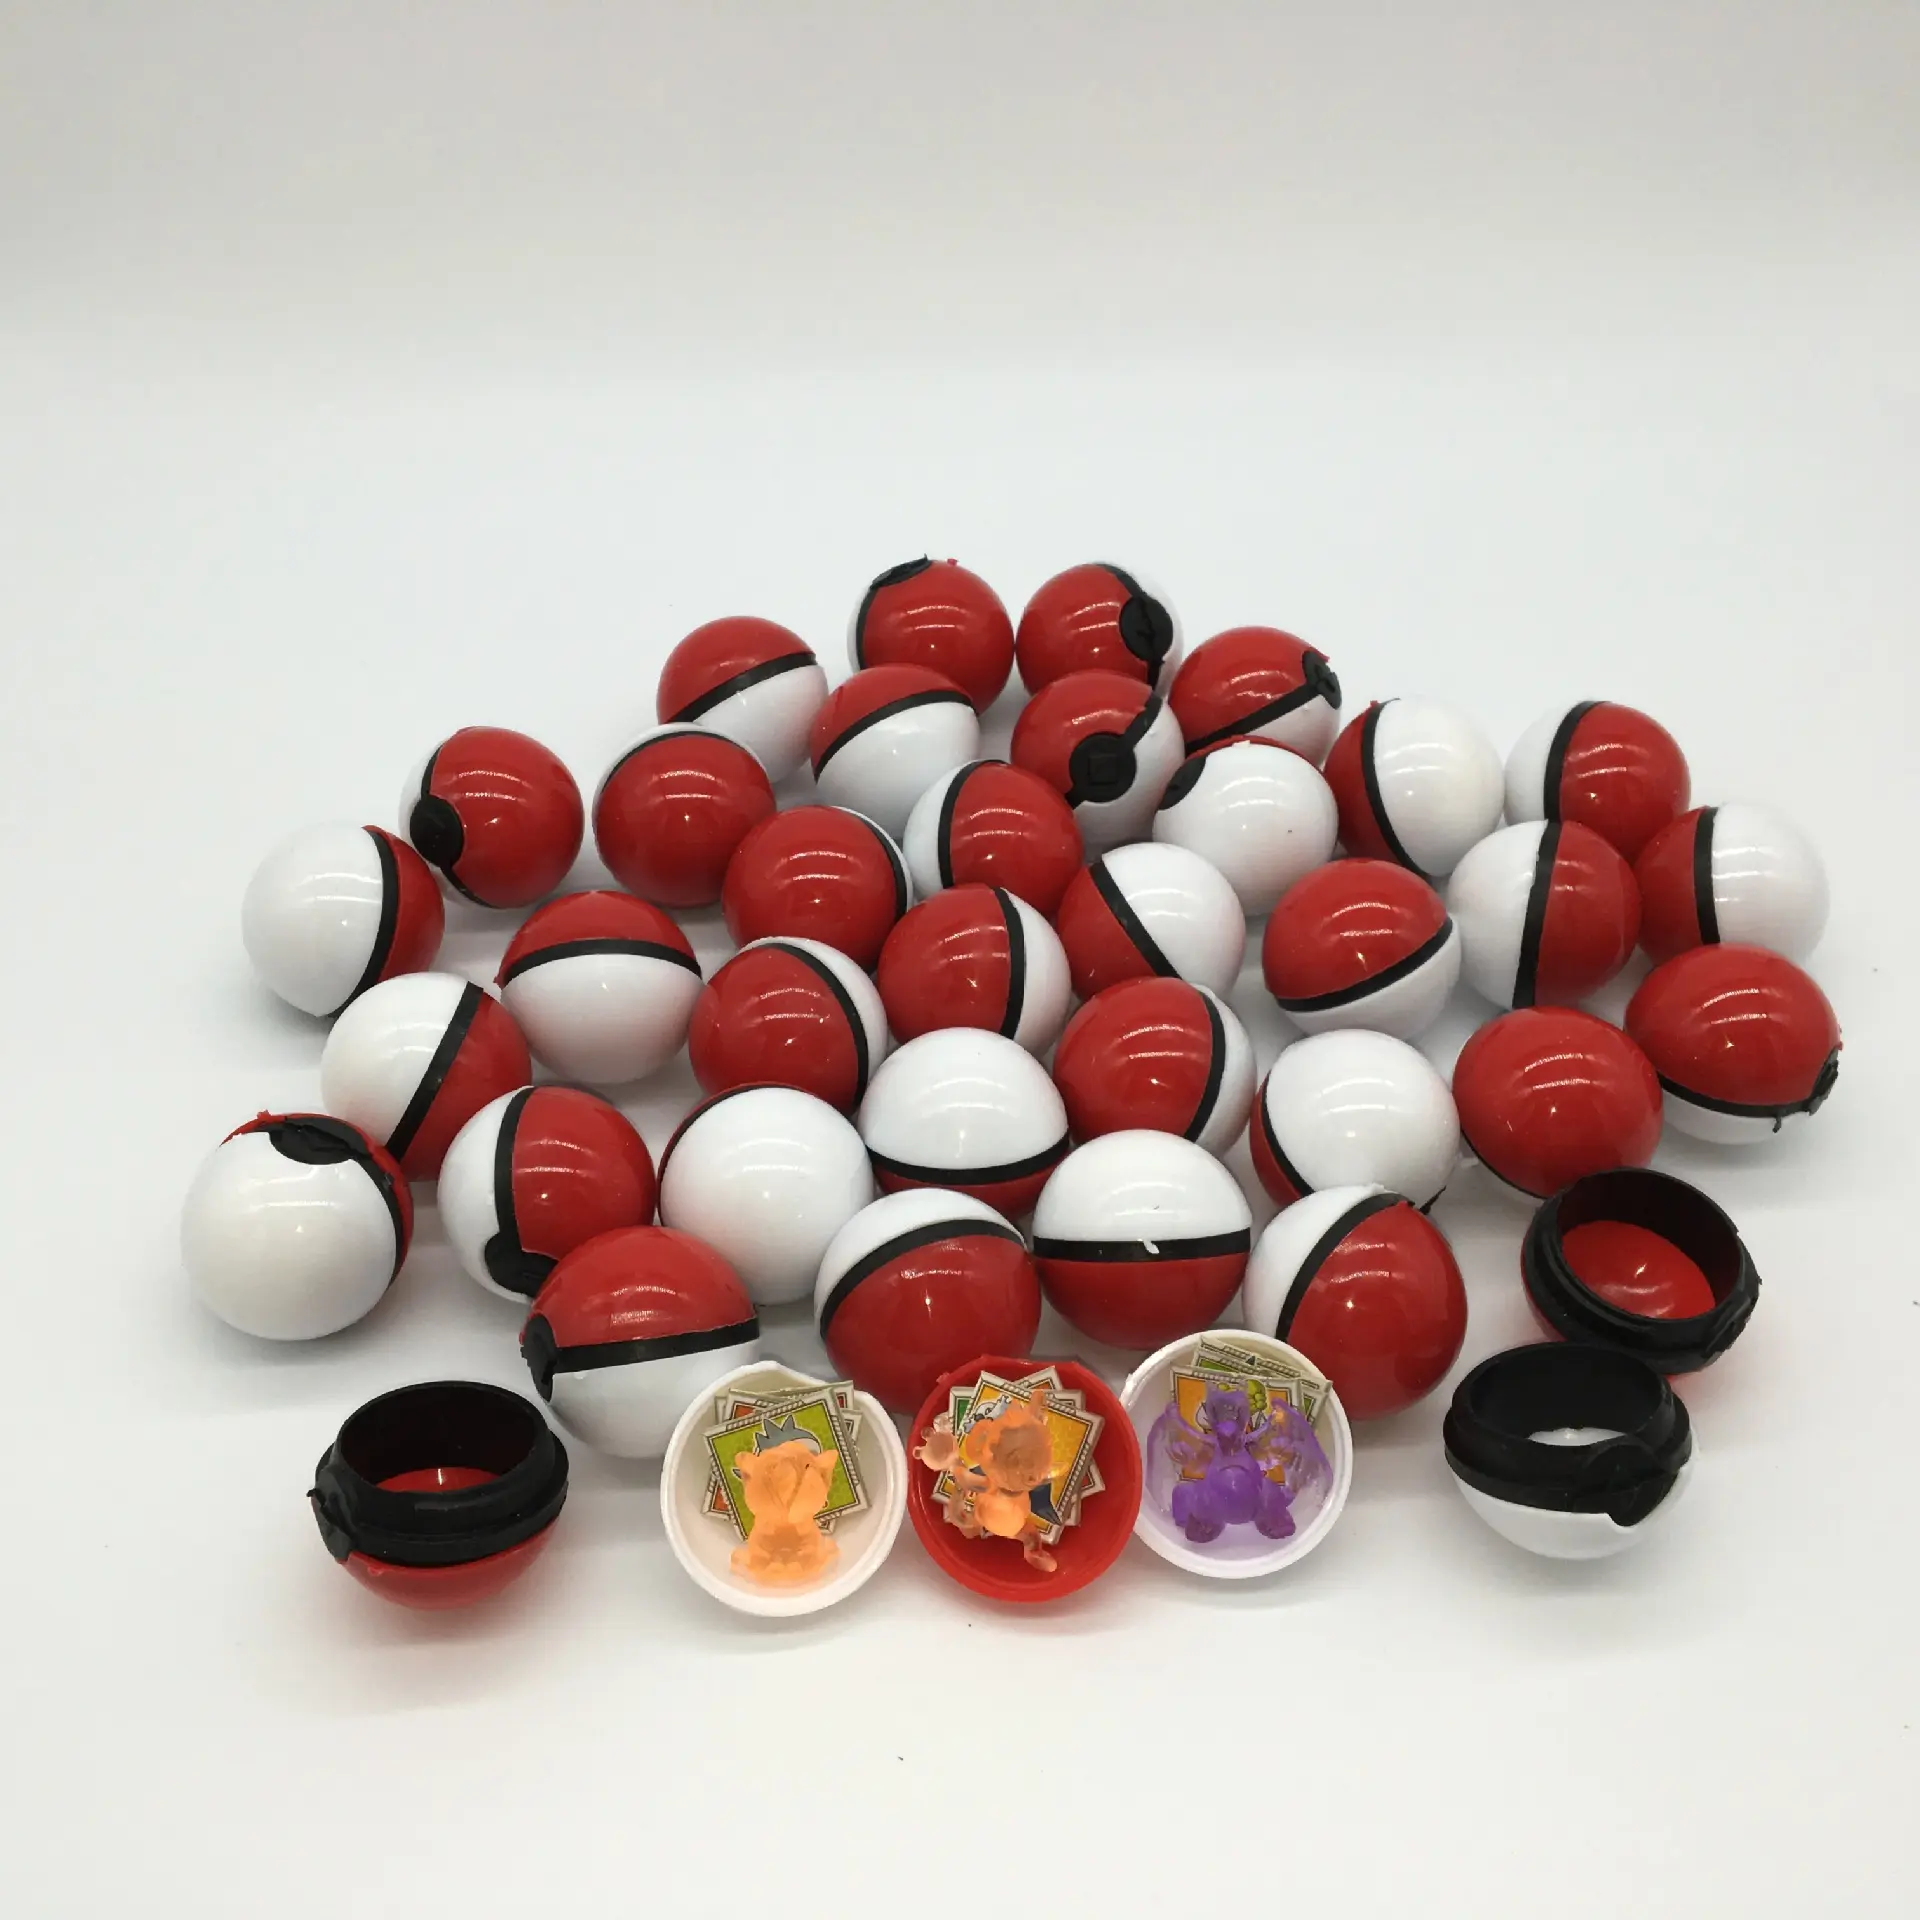 Ucuz sıcak satış 3.4 cm Vending Ball oyuncak Poke mon topu kapsül oyuncak otomat için iç şekil ile